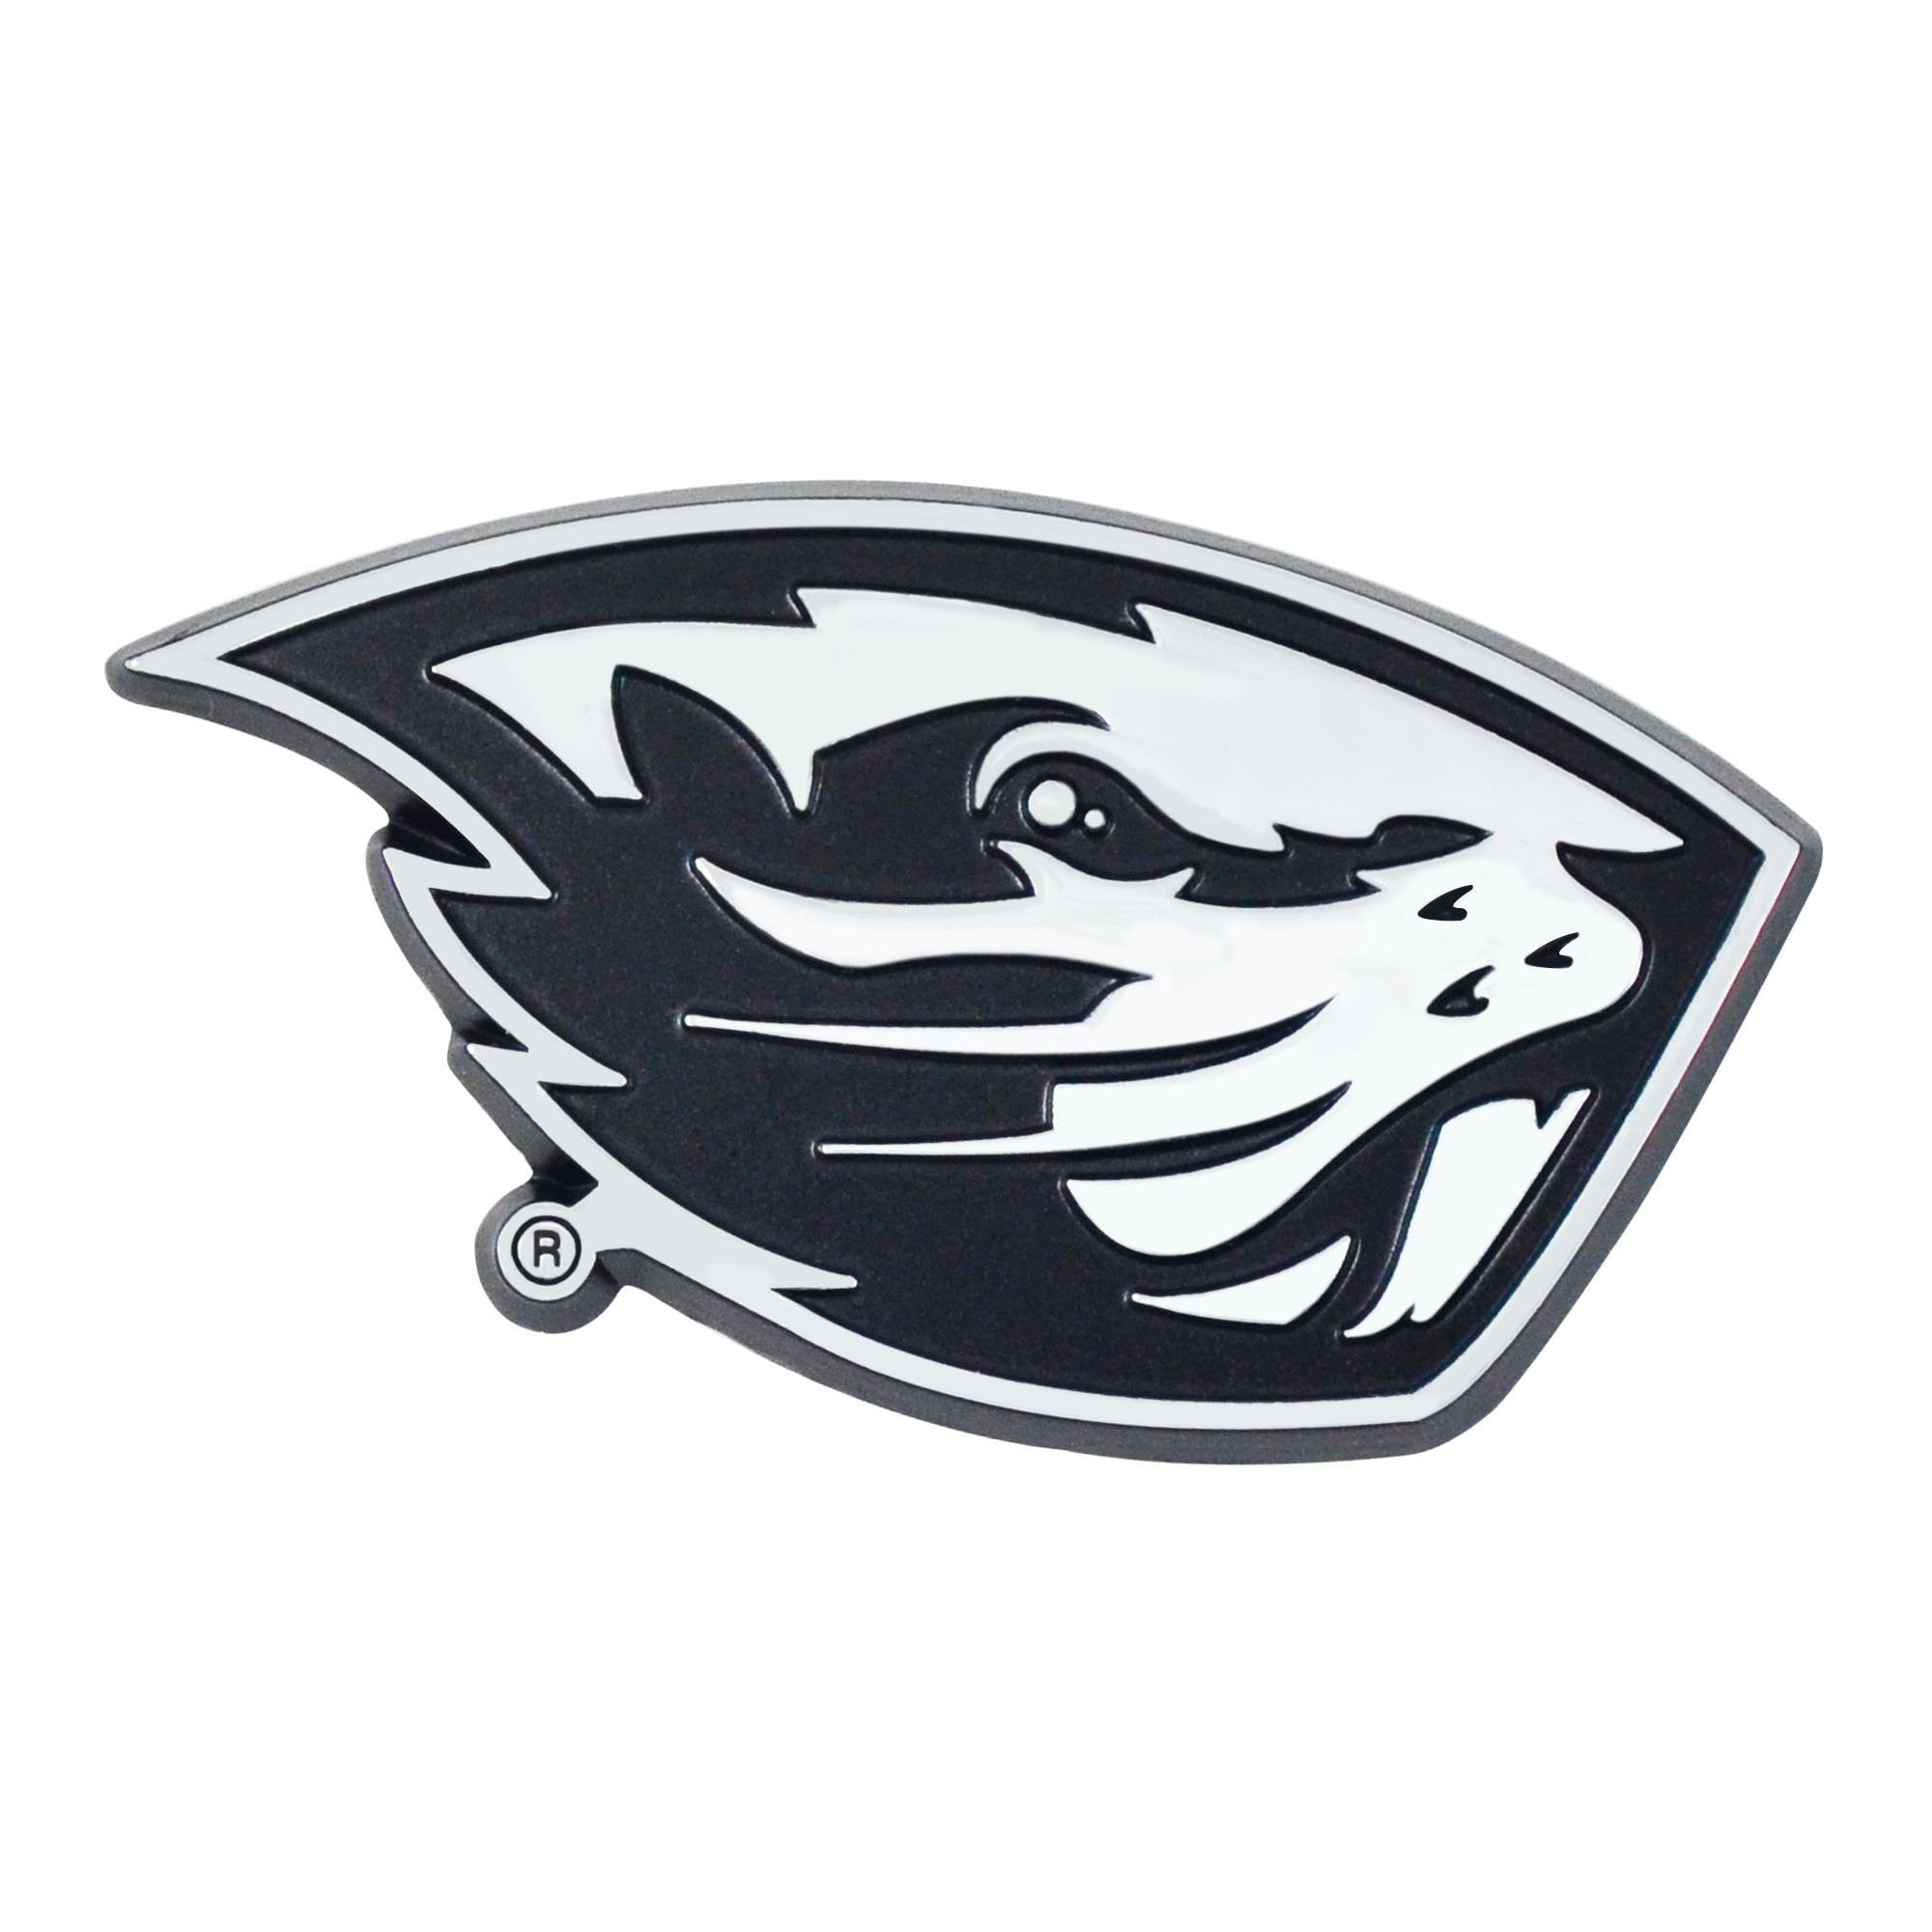 Oregon State Beavers 3D Chrome Emblem